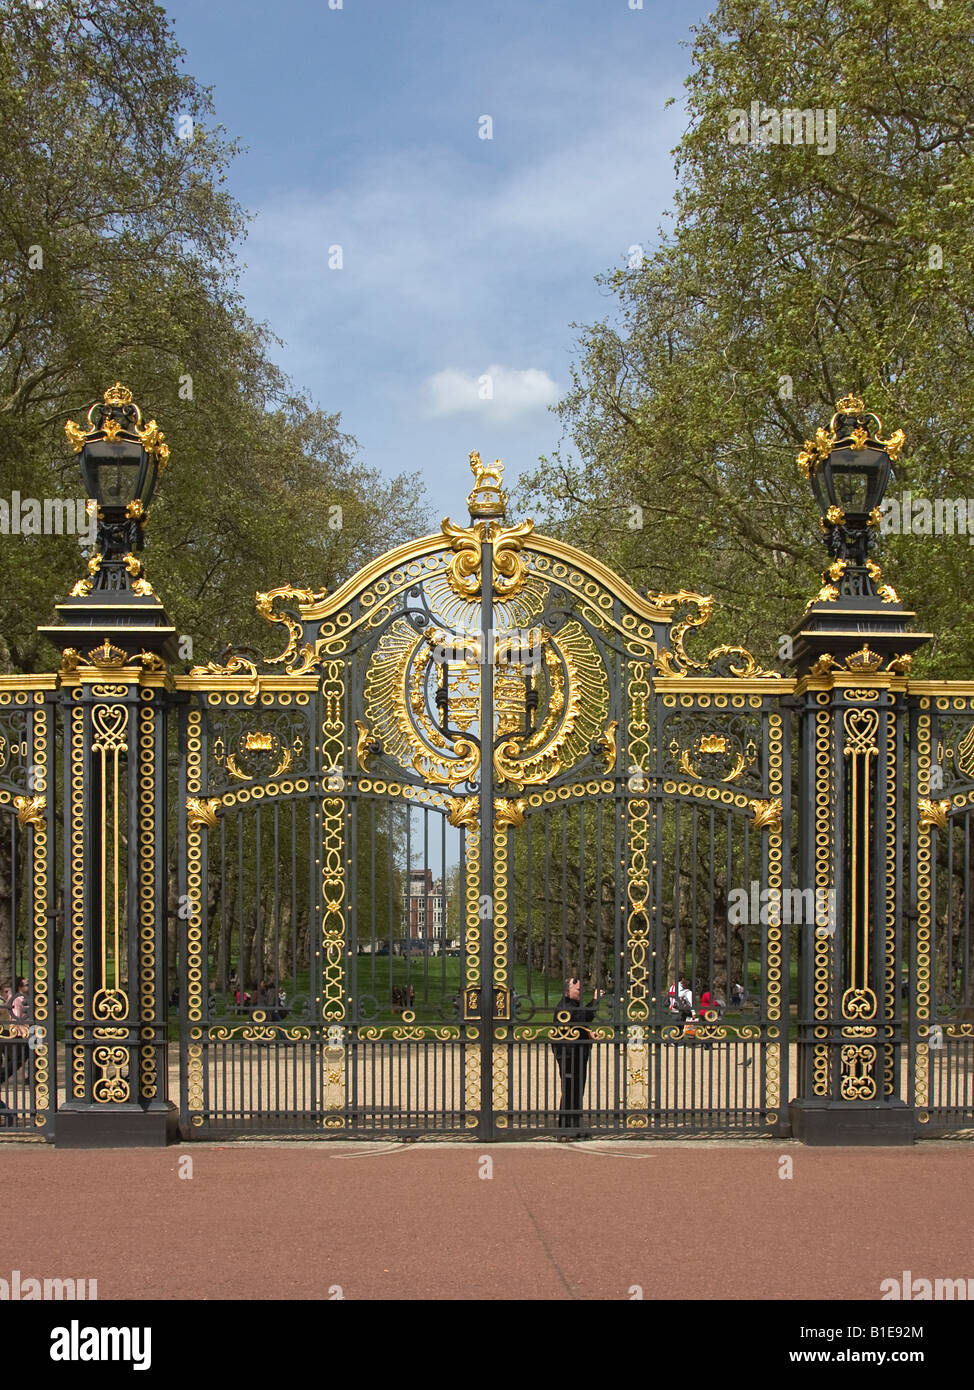 Canada Gates at Buckingham Palace Park London England Stock Photo